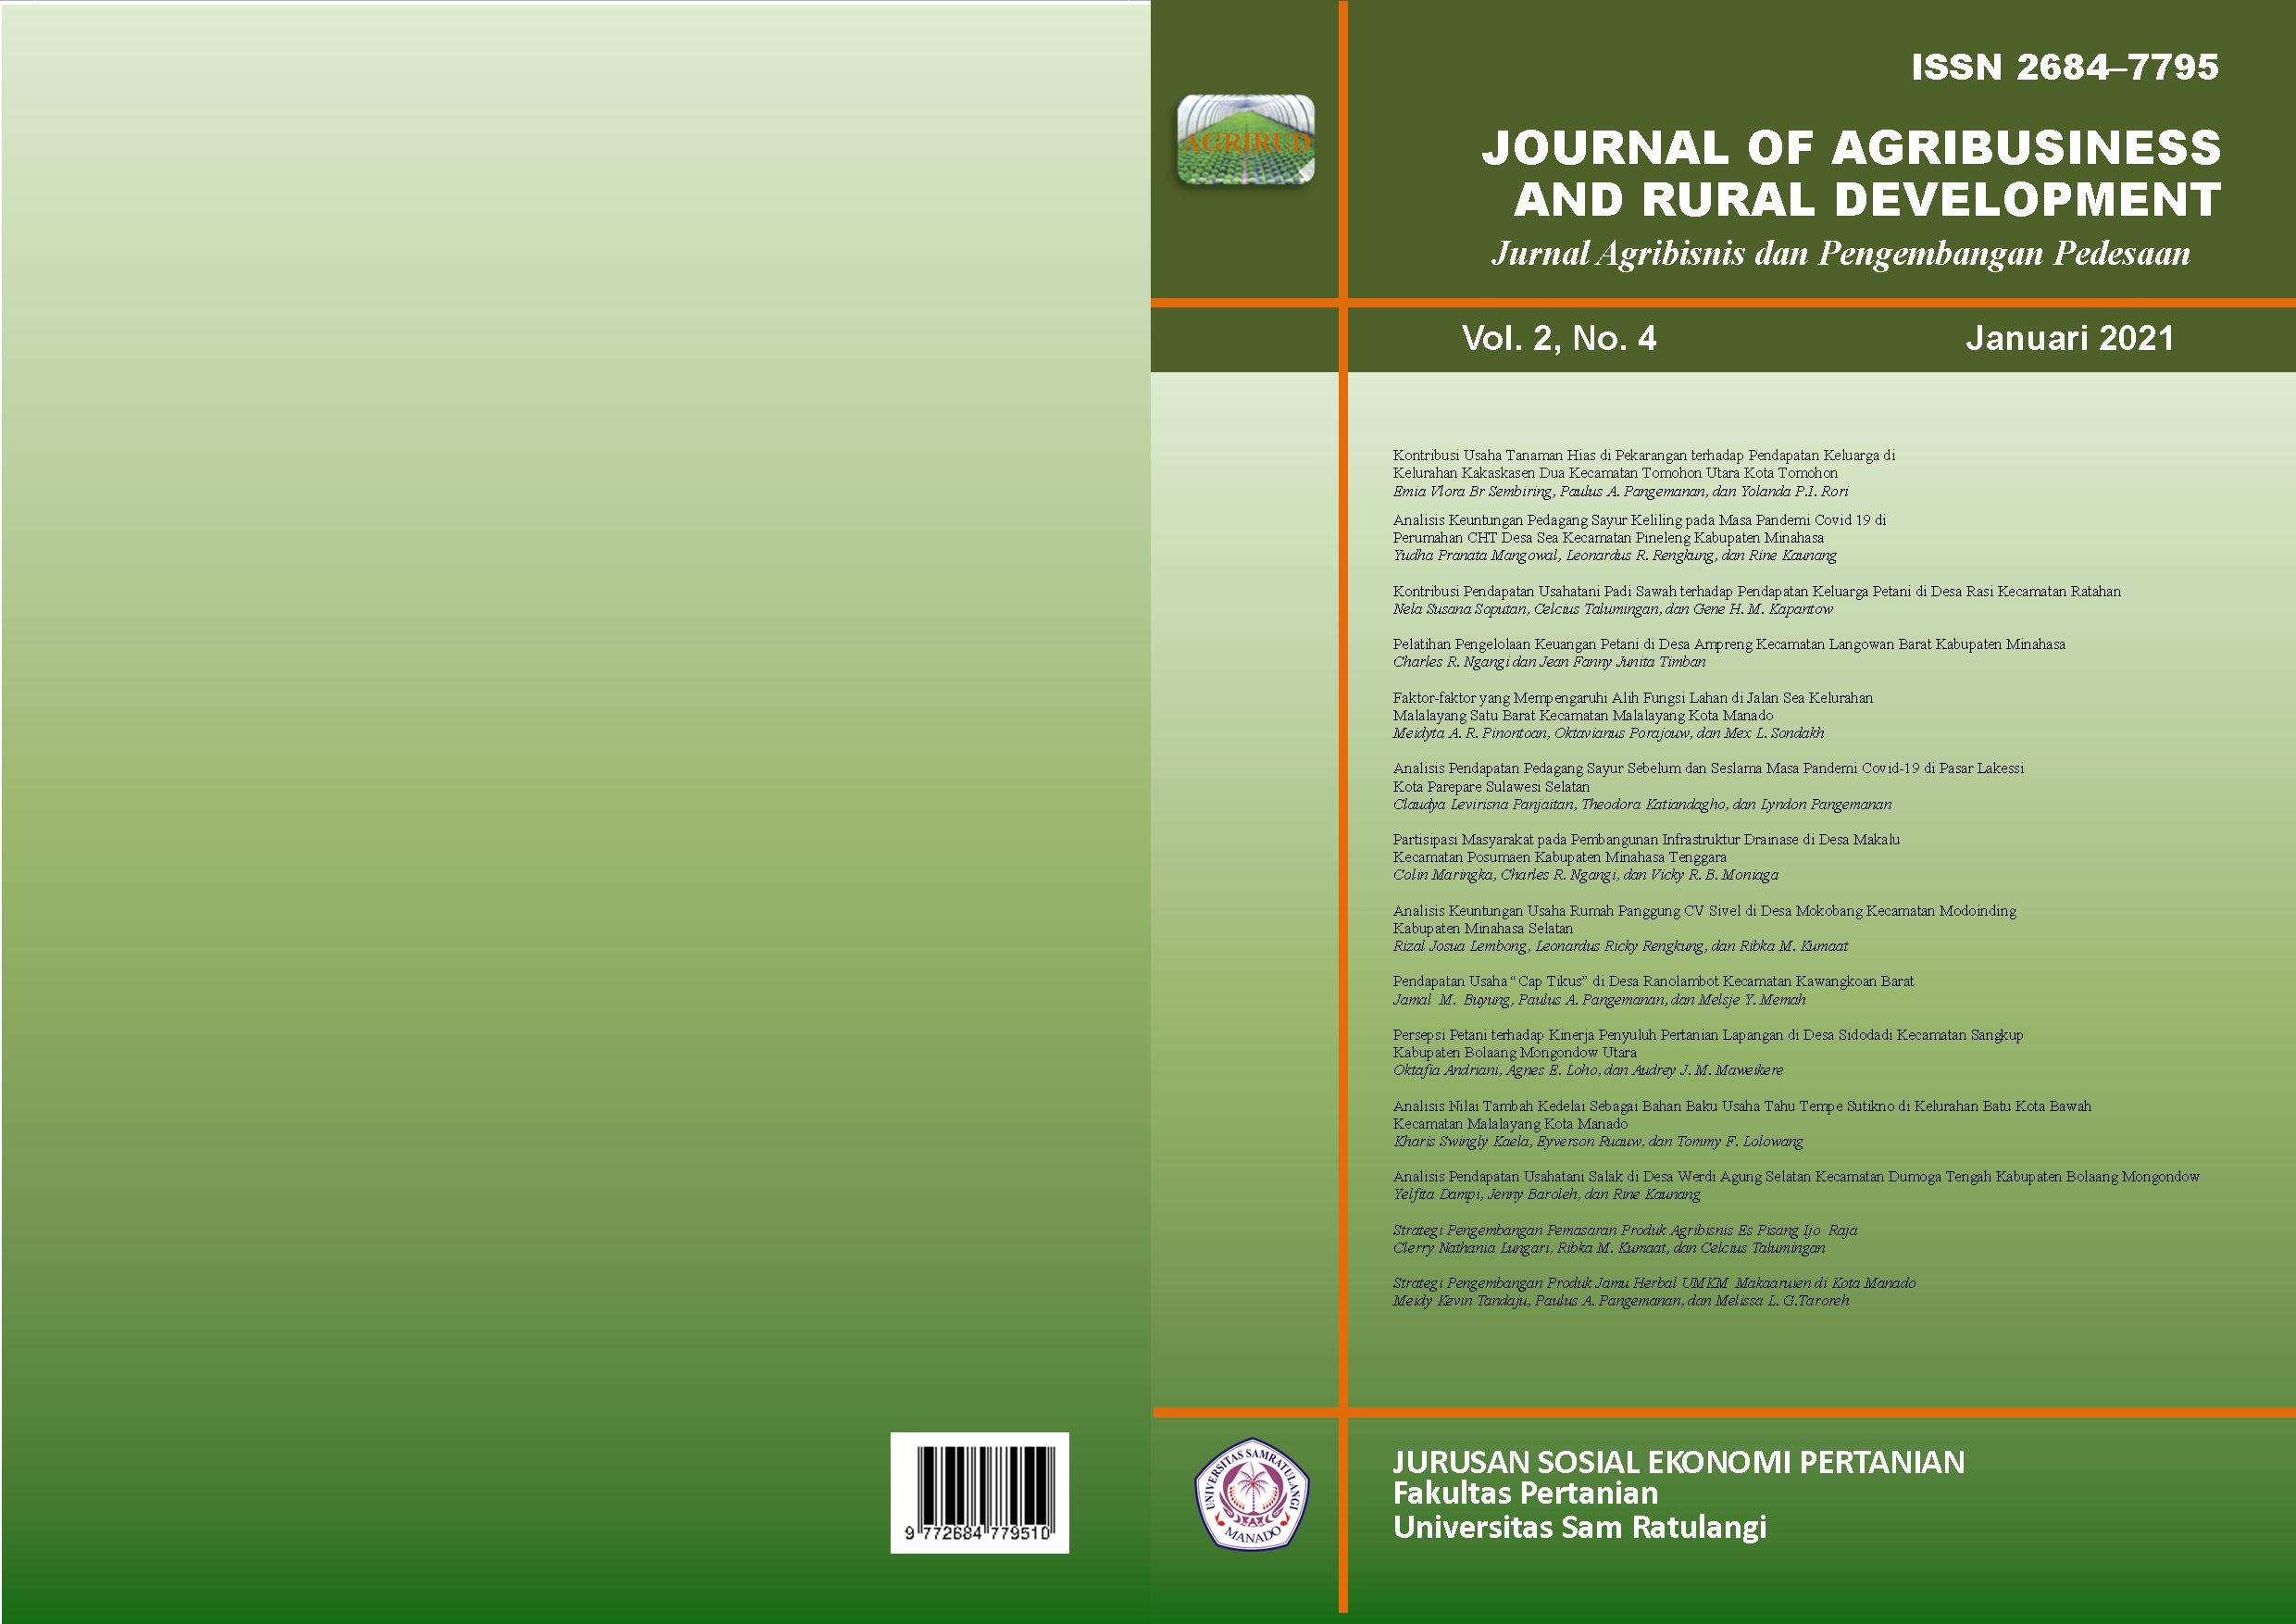 					View Vol. 2 No. 4 (2021): Journal of Agribusiness and Rural Development (Jurnal Agribisnis dan Pengembangan Pedesaan) - Januari 2021
				